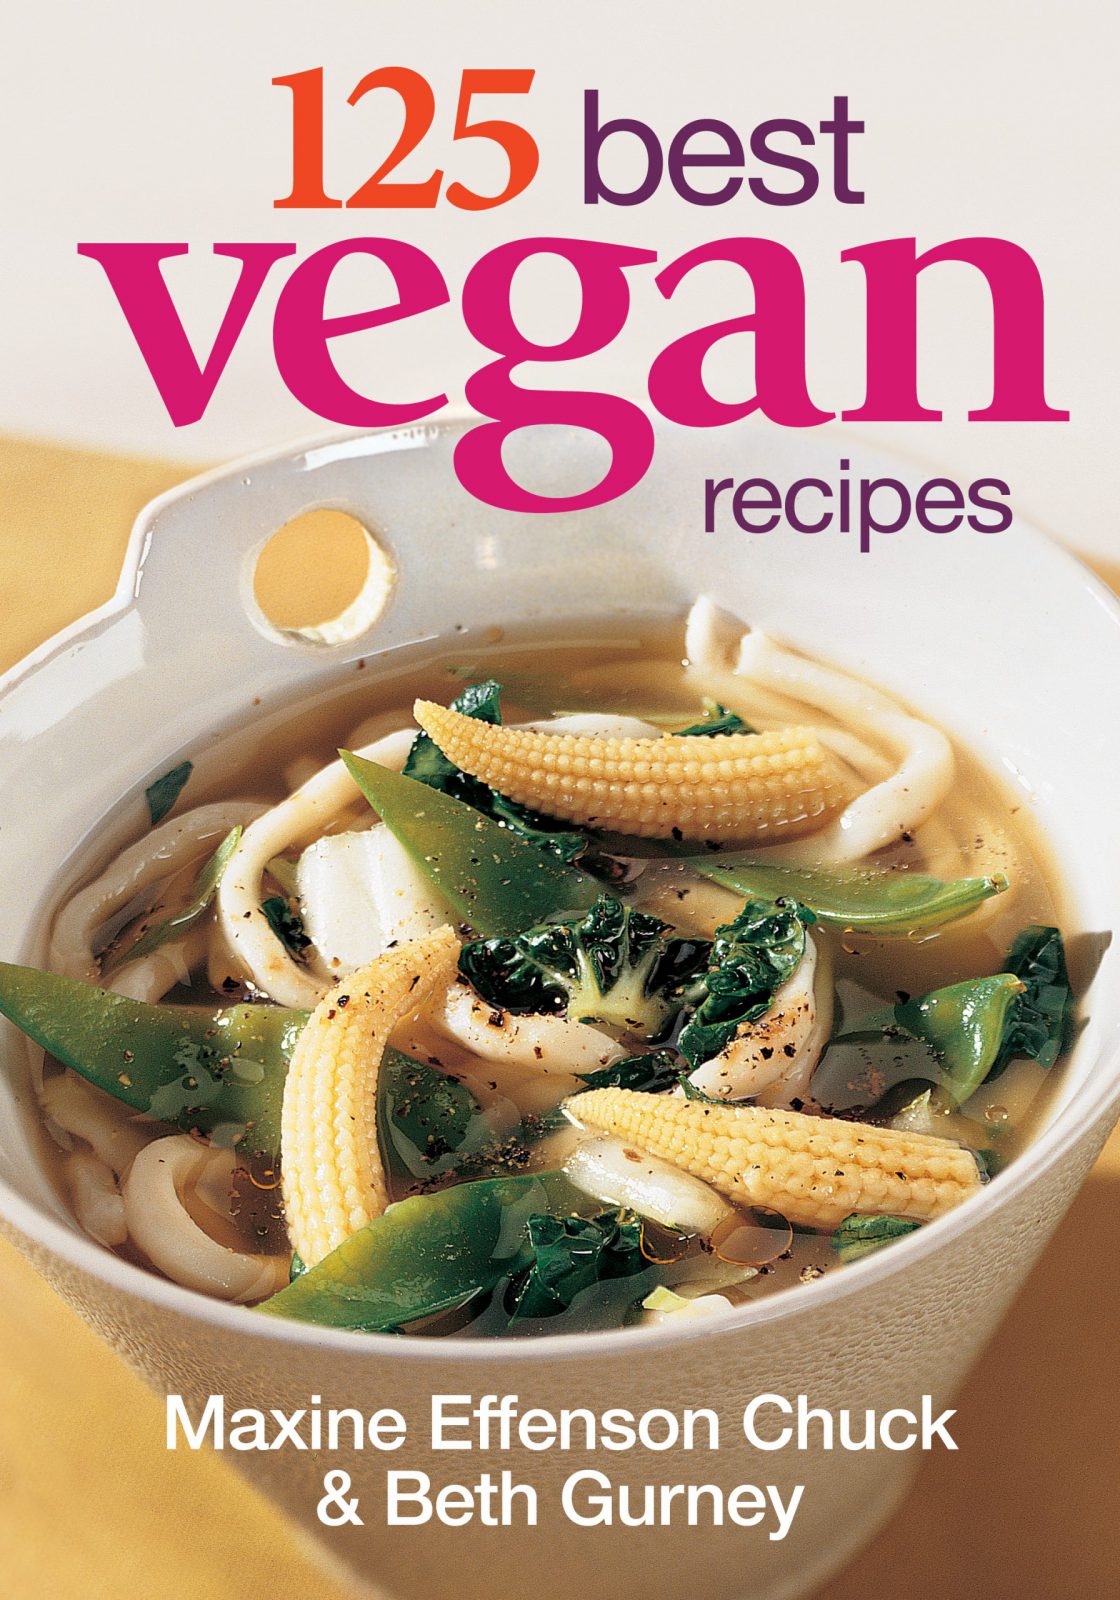 125 Best Vegan Recipes